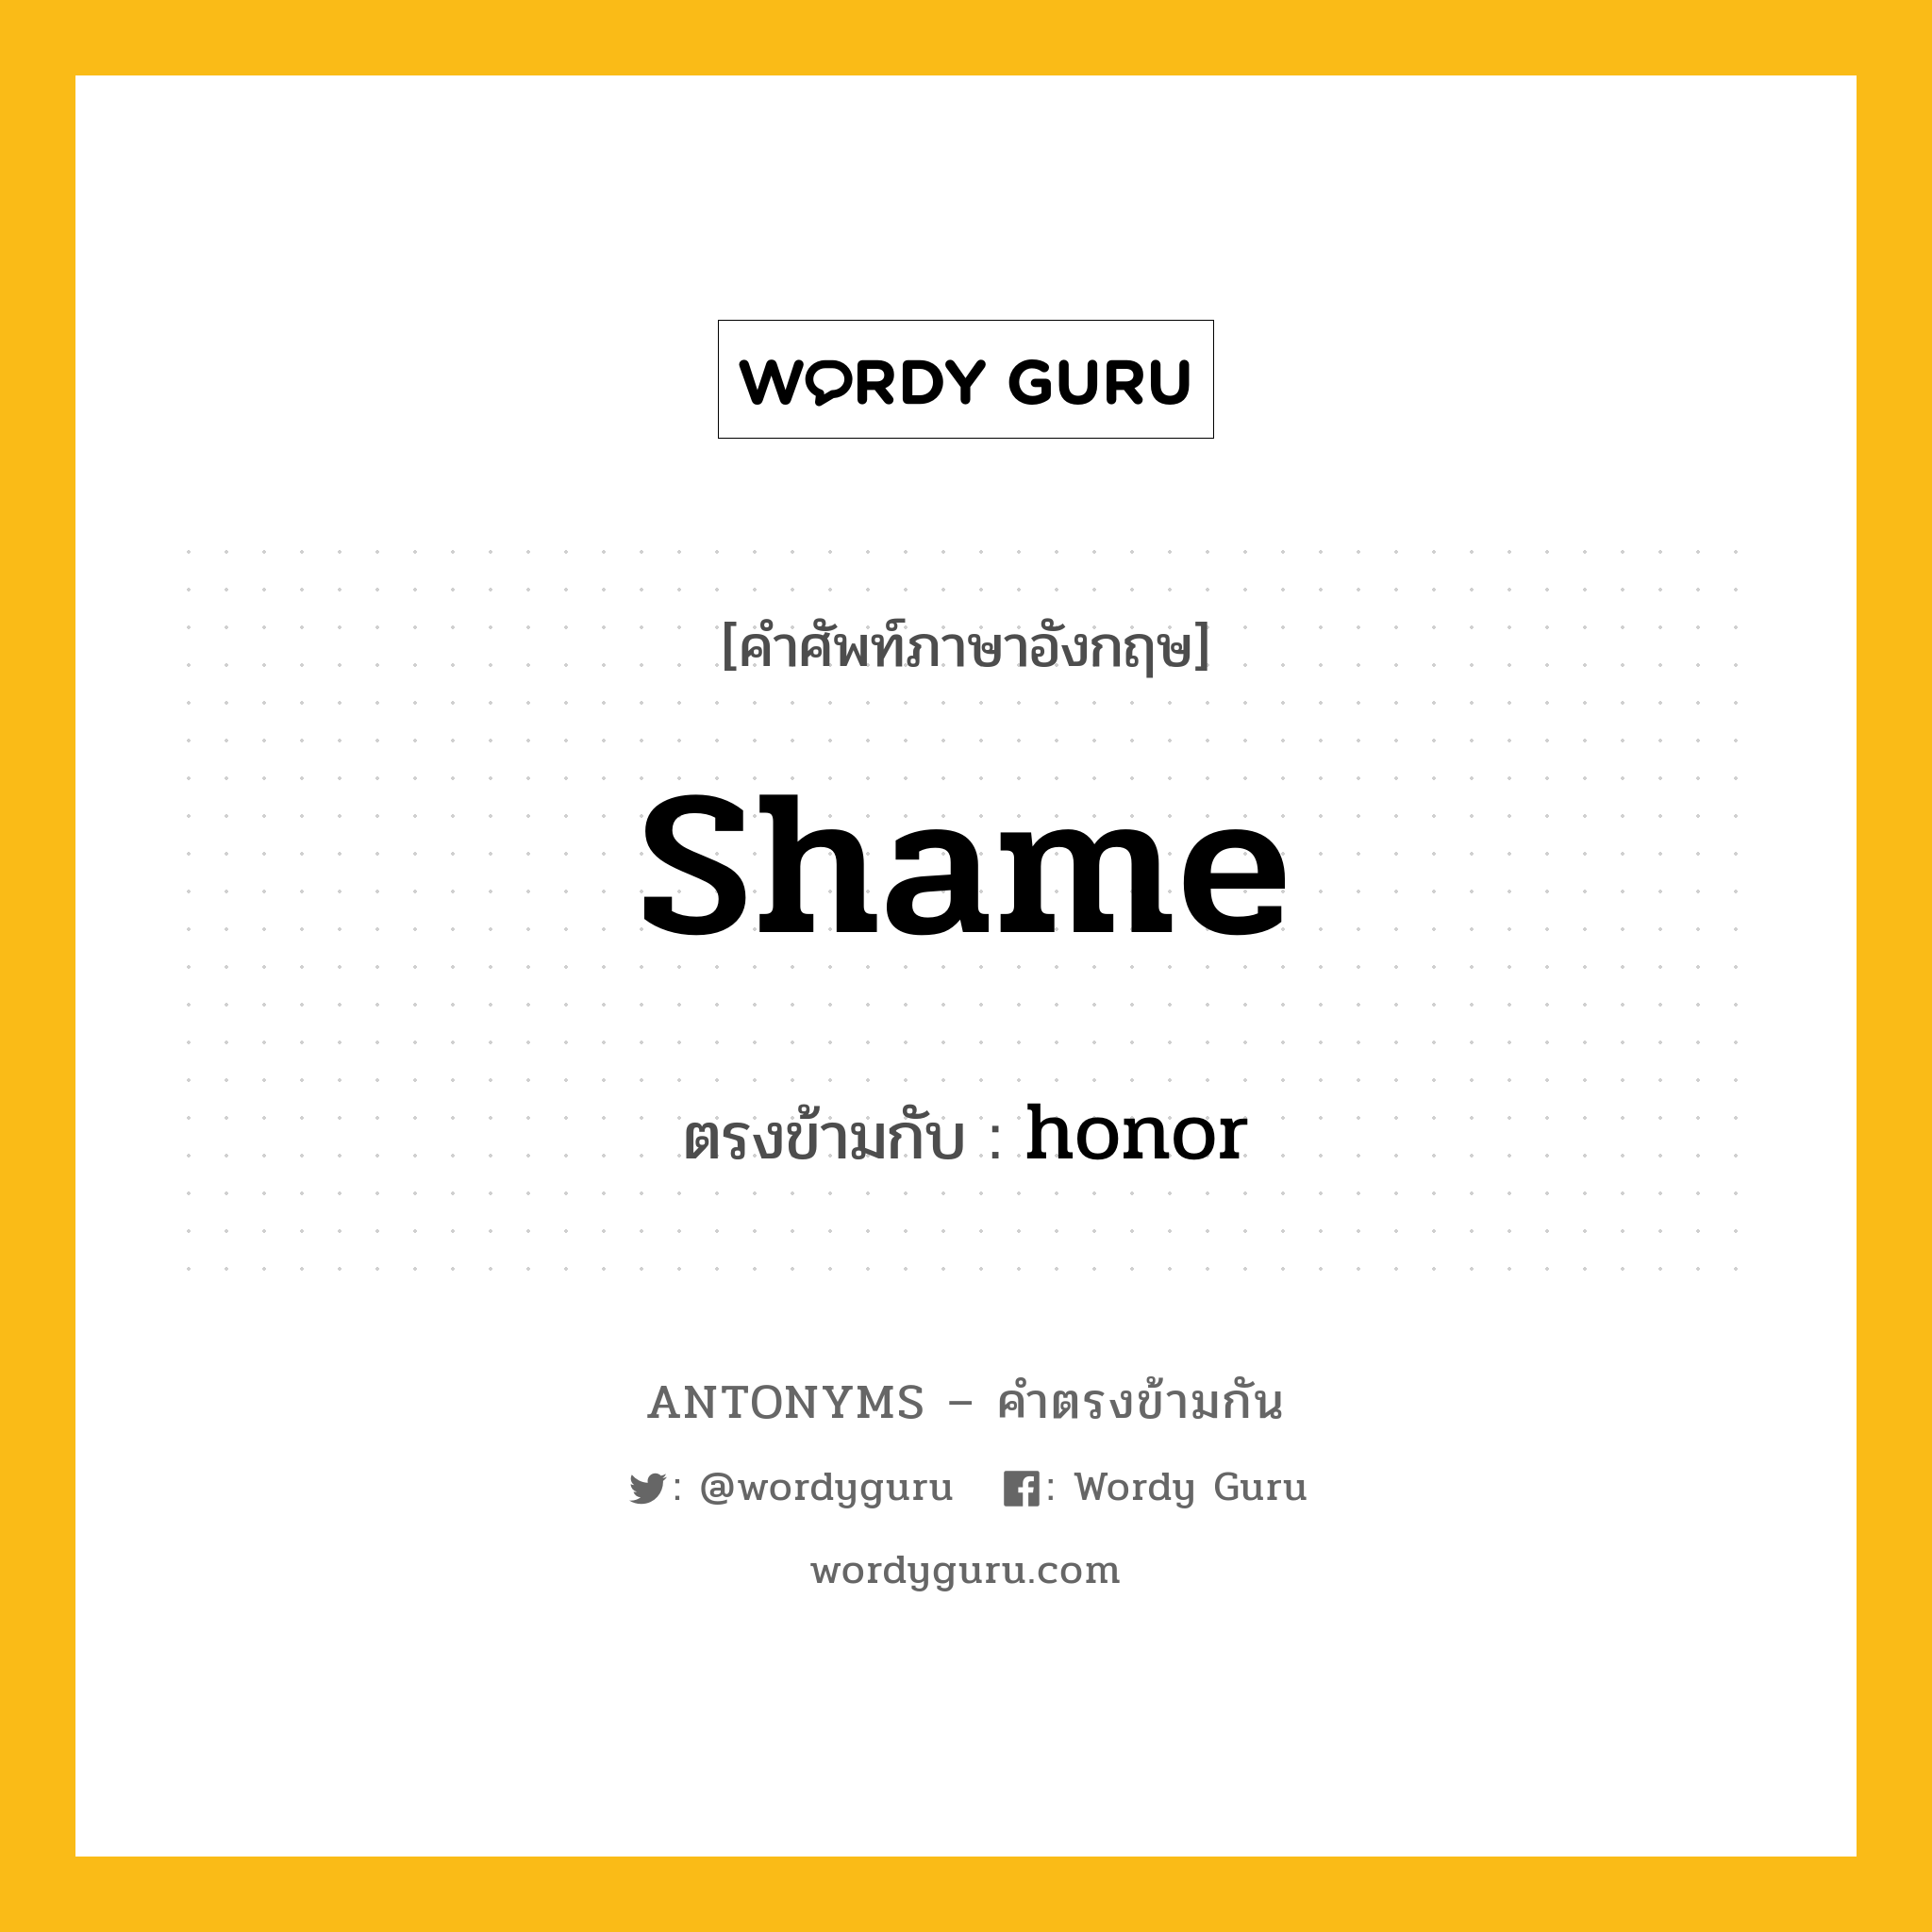 shame เป็นคำตรงข้ามกับคำไหนบ้าง?, คำศัพท์ภาษาอังกฤษ shame ตรงข้ามกับ honor หมวด honor